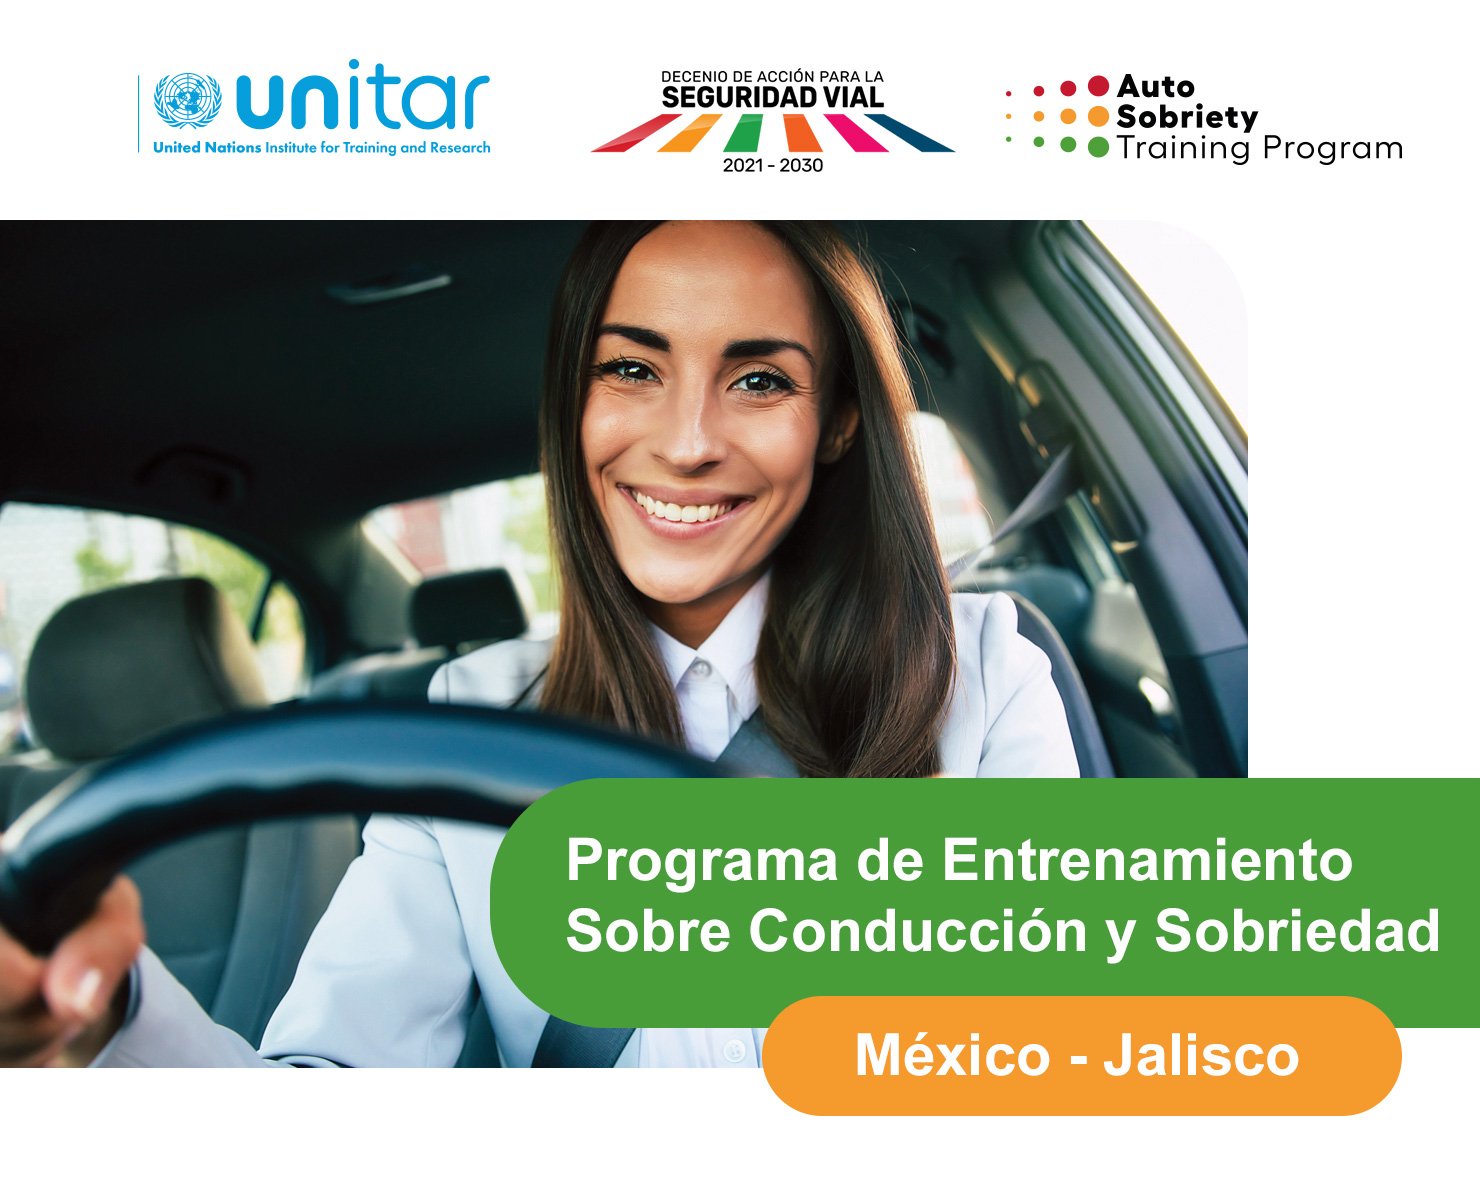 Programa de Entrenamiento sobre Conducción y Sobriedad – Jalisco, México